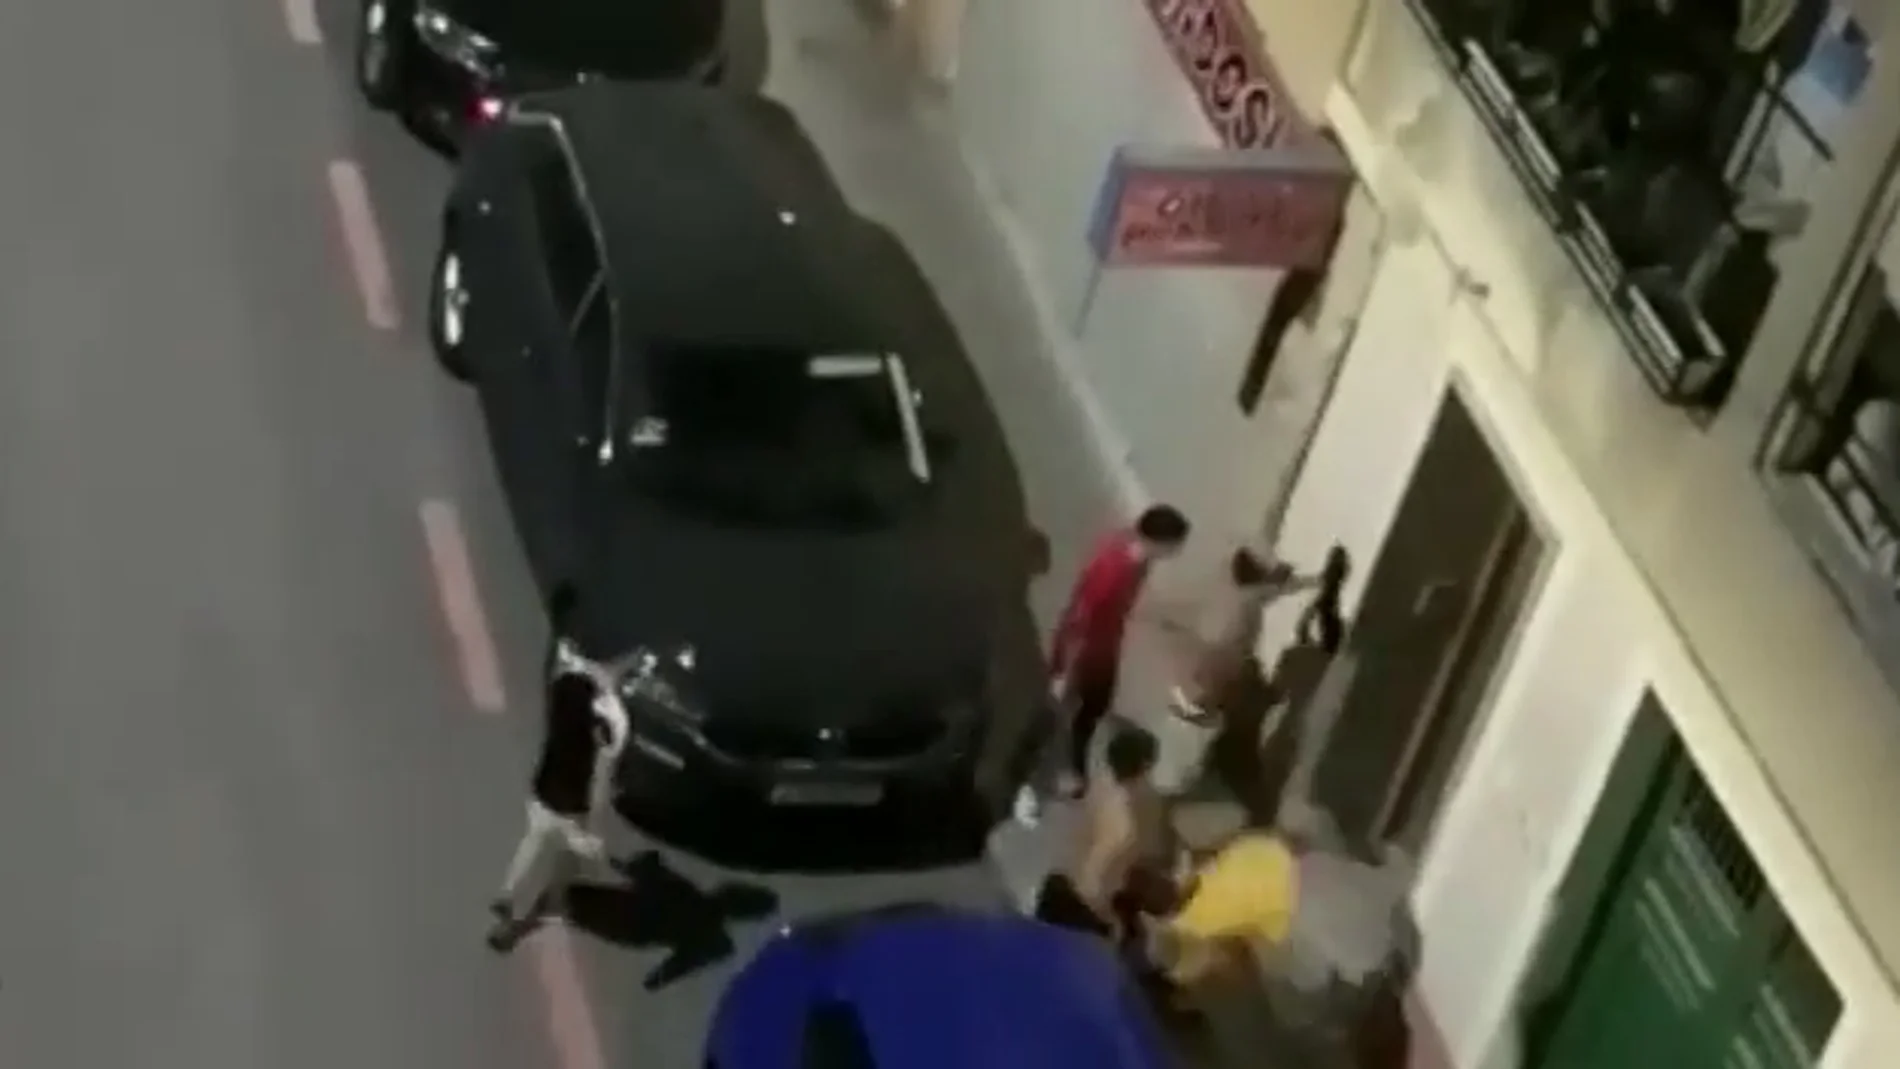 Cuatro jóvenes detenidos tras participar en una pelea multitudinaria con palos y cuchillos en Alicante